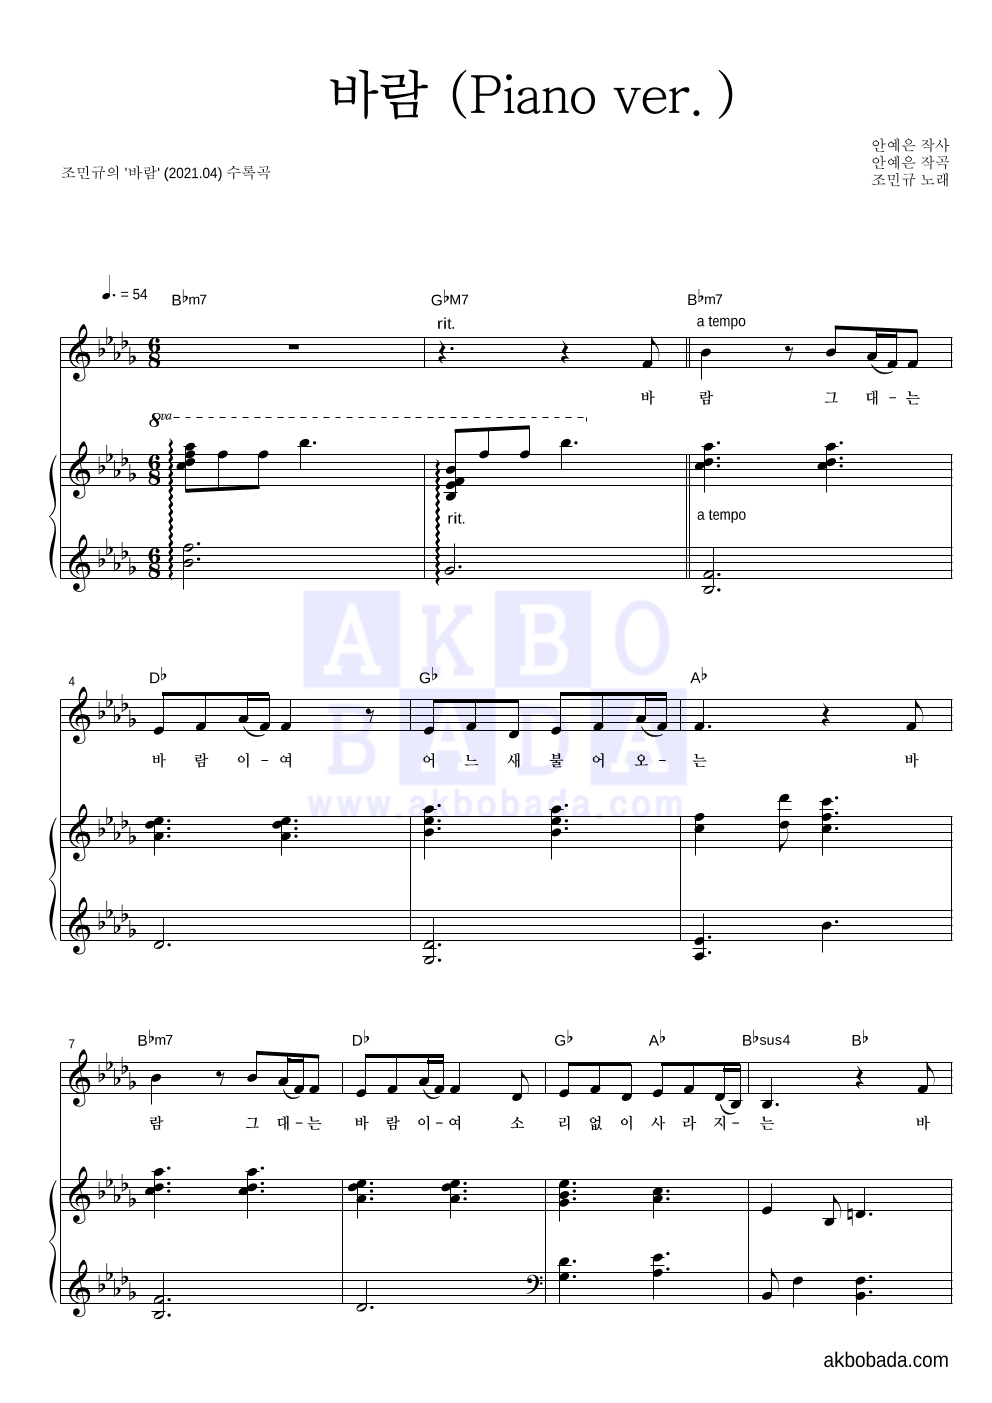 조민규 - 바람 (Piano ver.) 피아노 3단 악보 